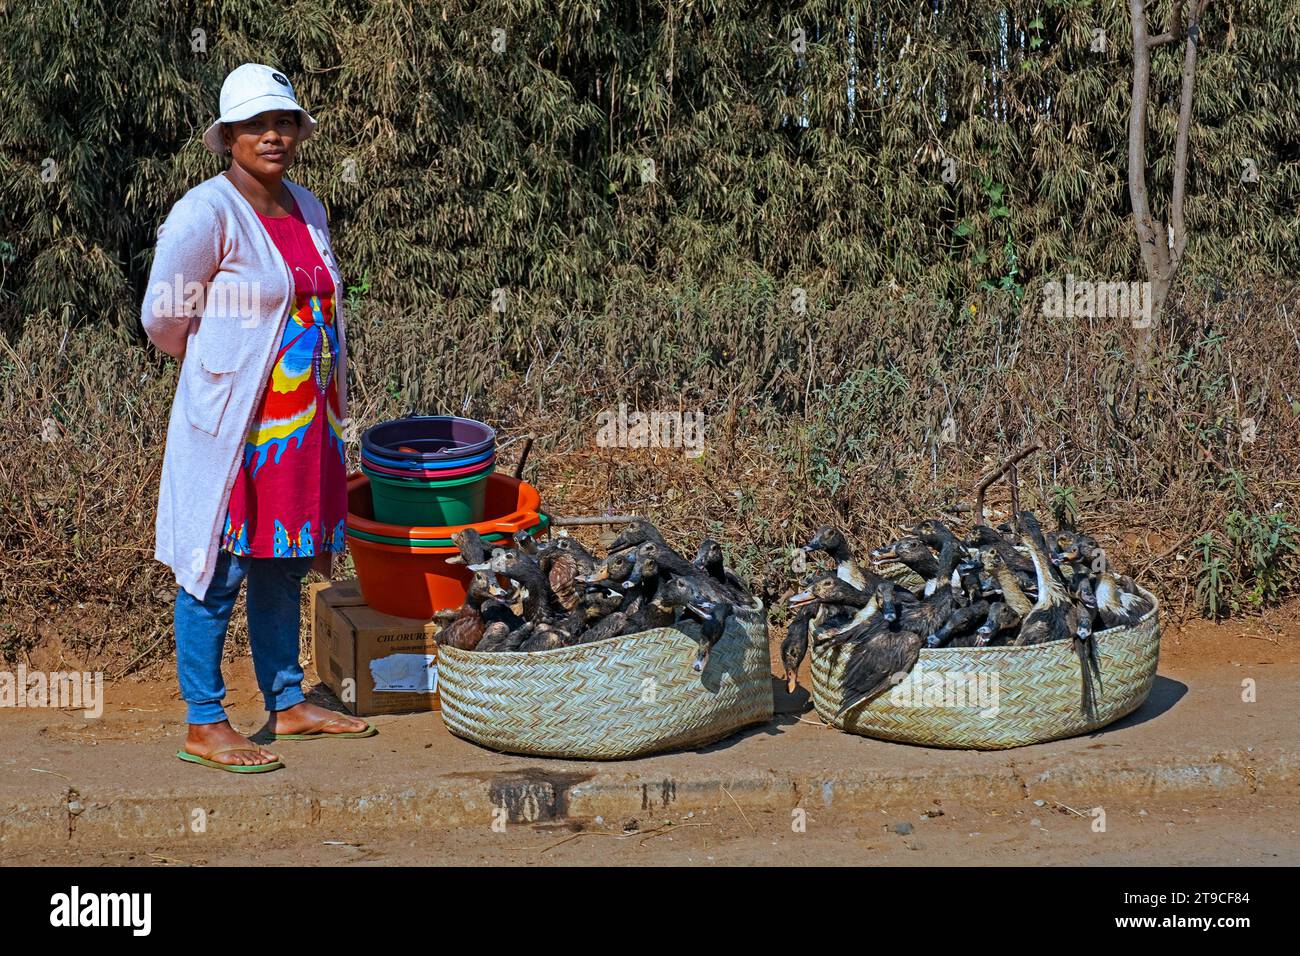 Femme malgache vendant des canards vivants dans des paniers le long de la route près d'Antsirabe, région de Vakinankaratra, hauts plateaux centraux, Madagascar, Afrique Banque D'Images